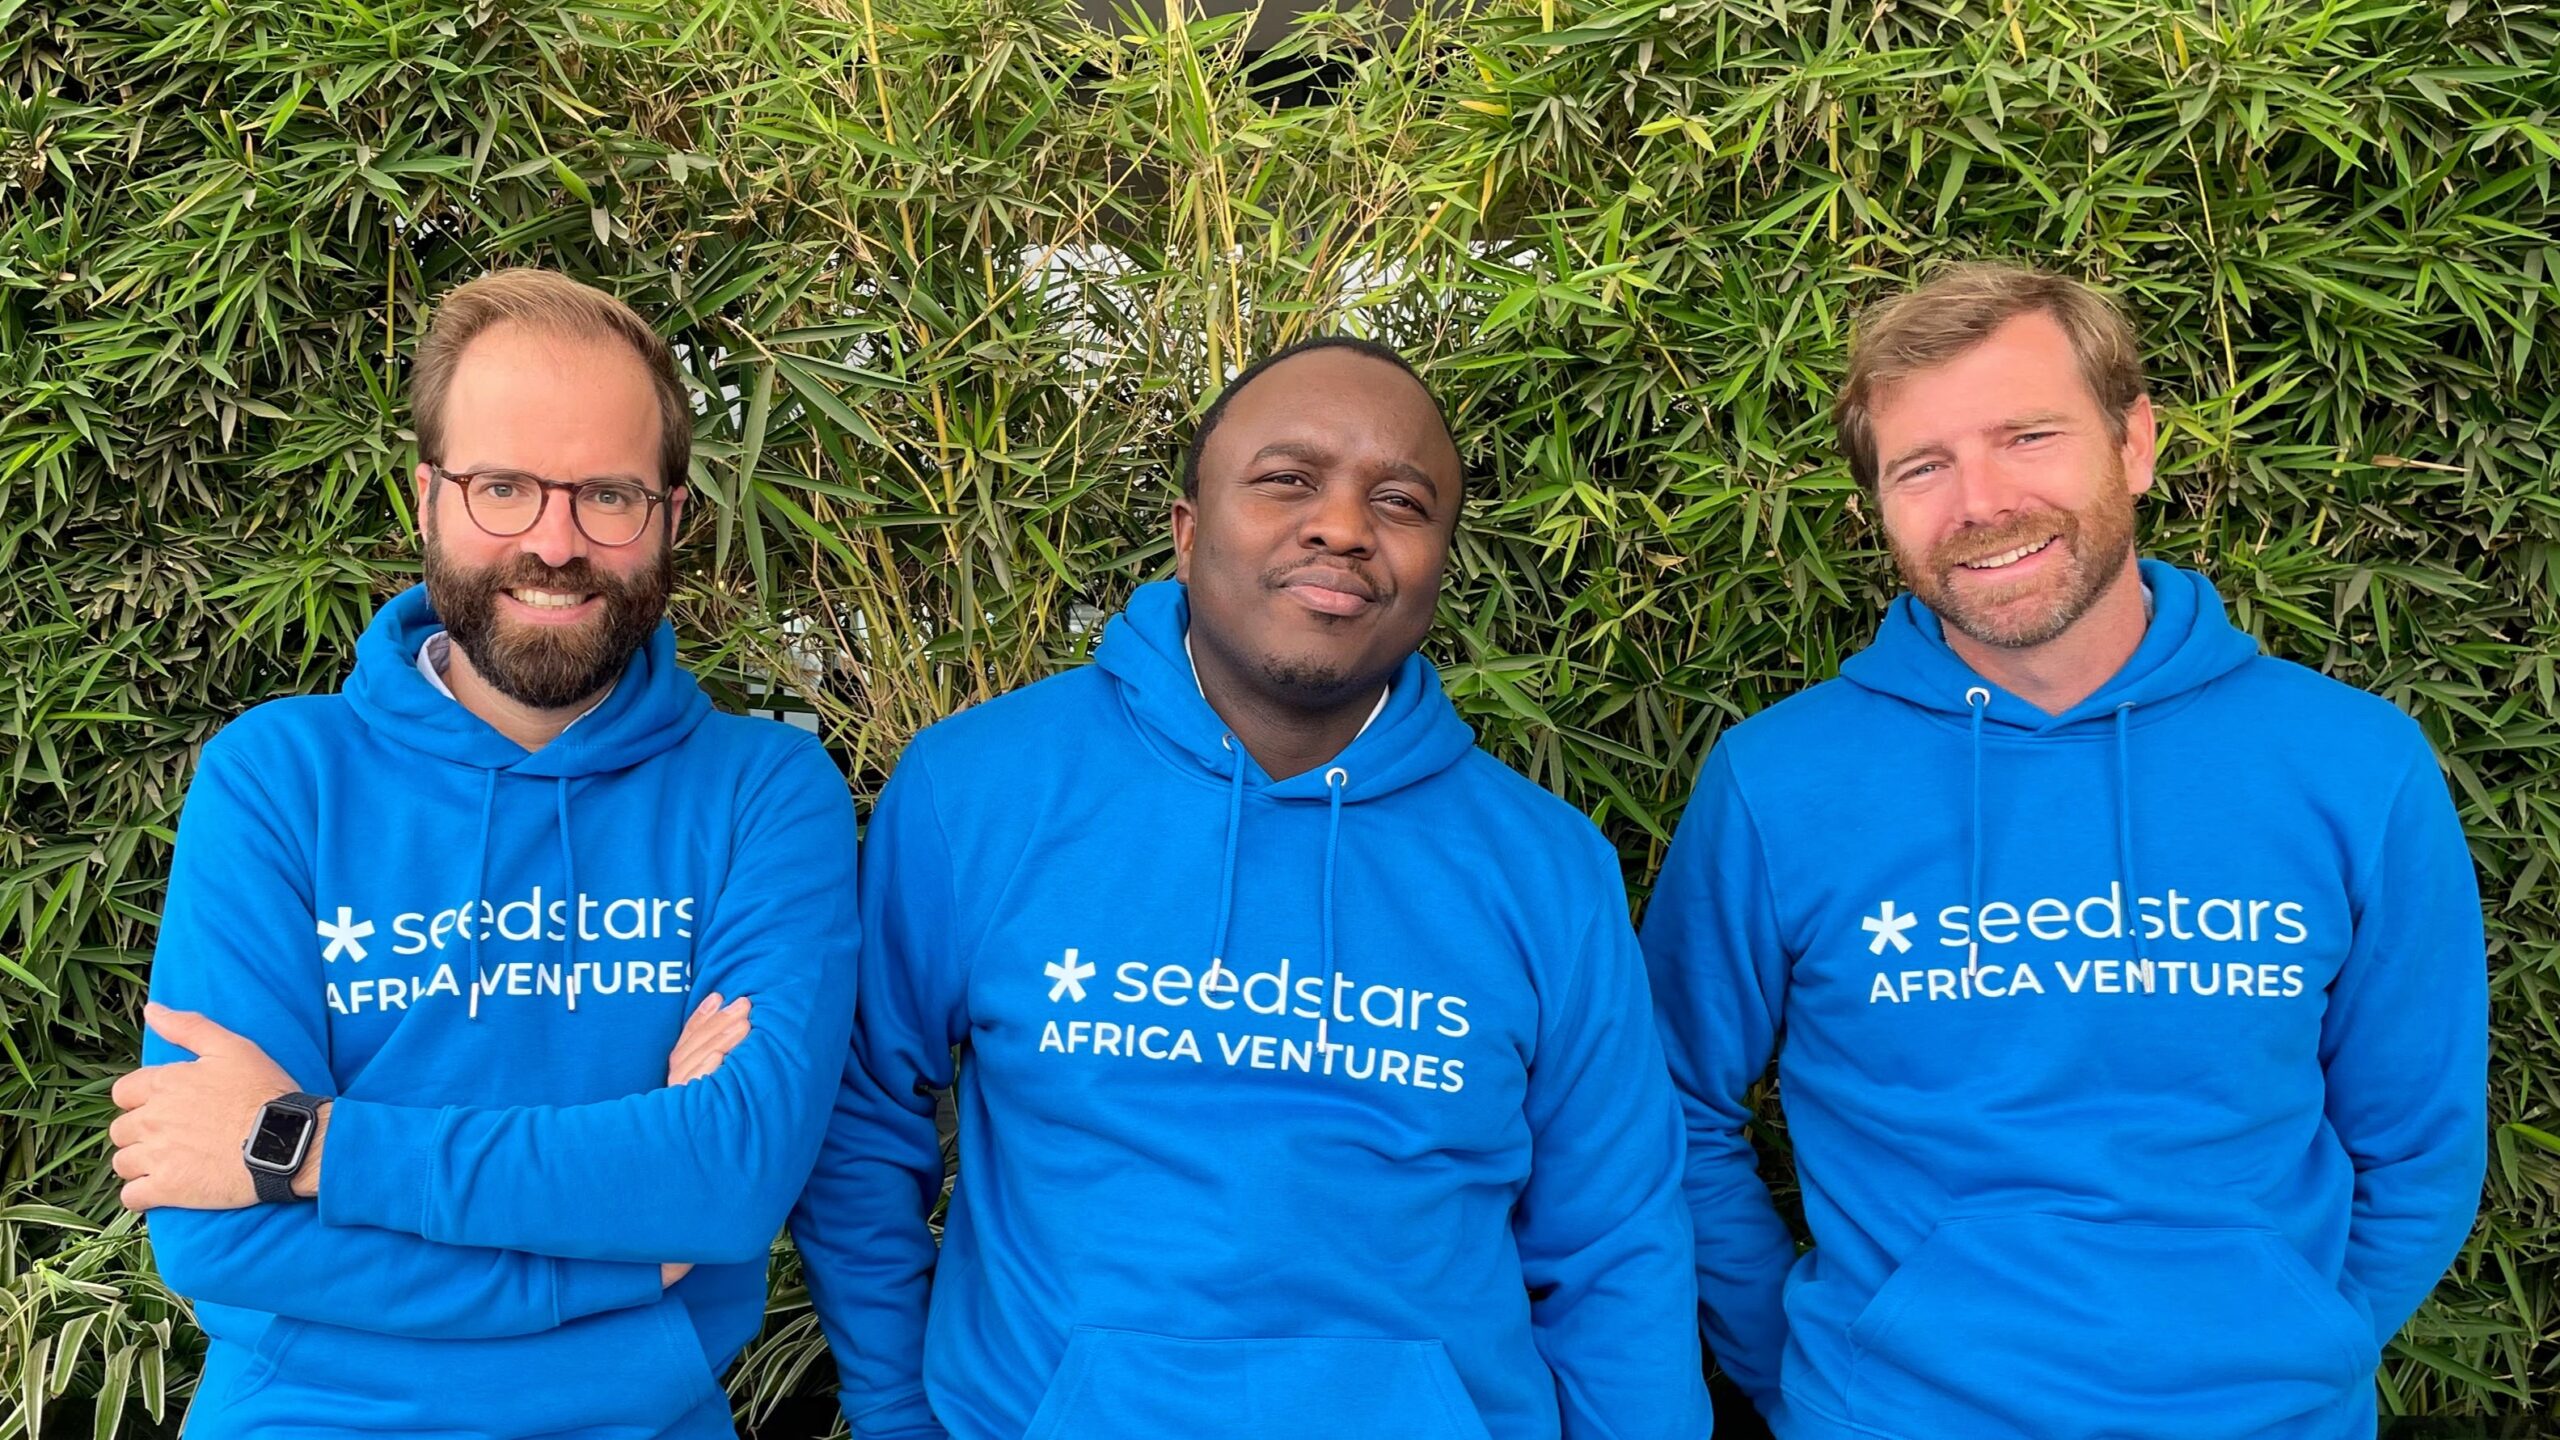 Seedstars Africa Ventures General Partners Tamim El Zein (left), Bruce Nsereko-Lule (center), and Maxime Bouan (right)